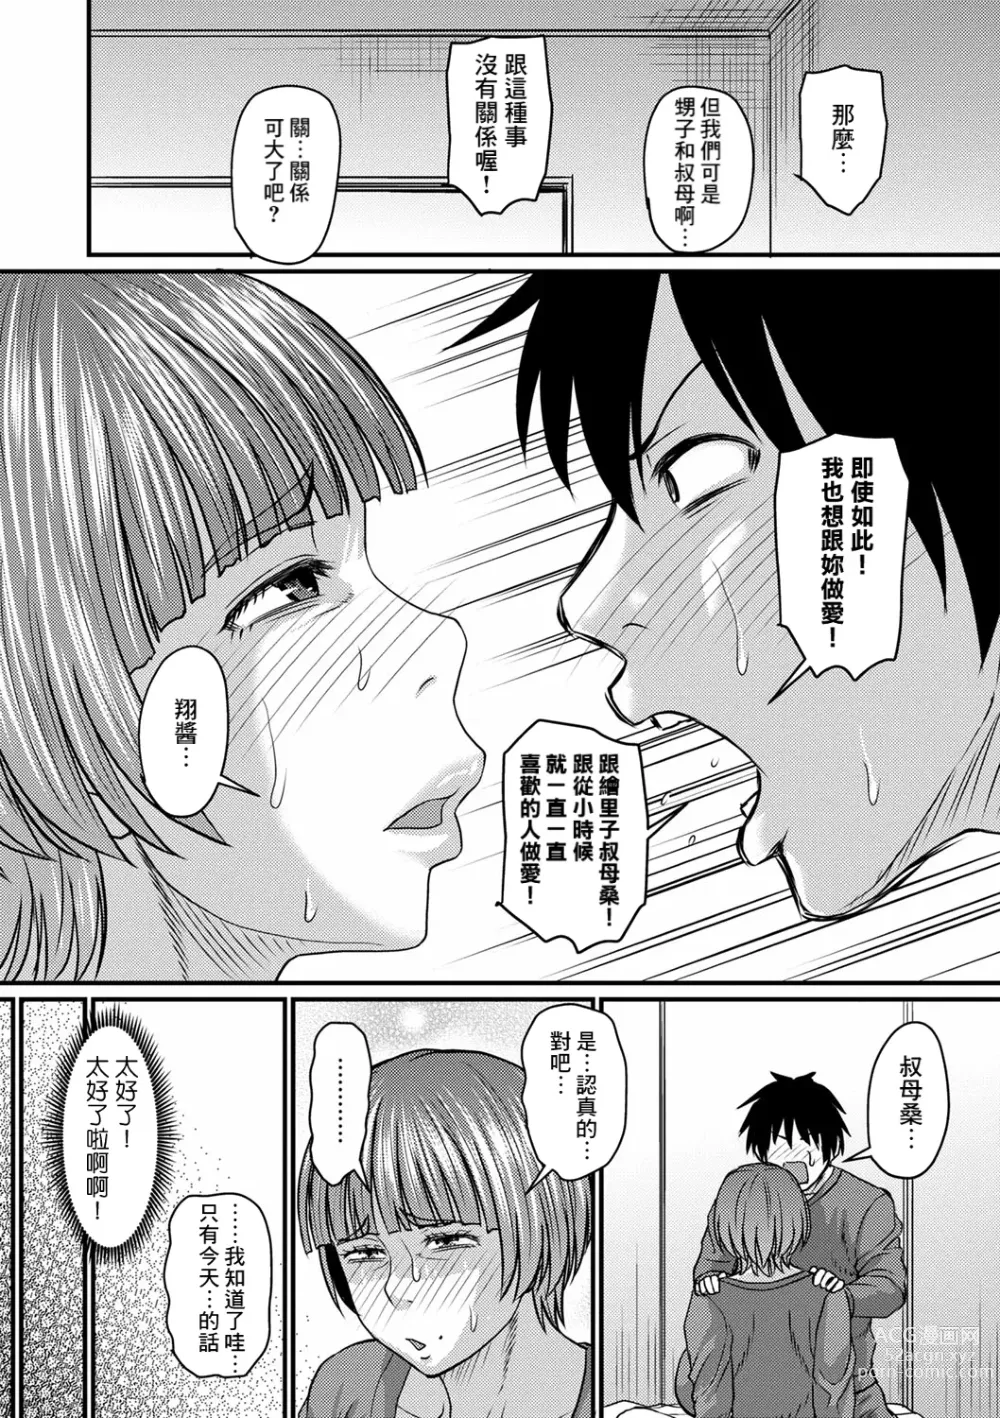 Page 8 of manga Obasan to Futarigurashi